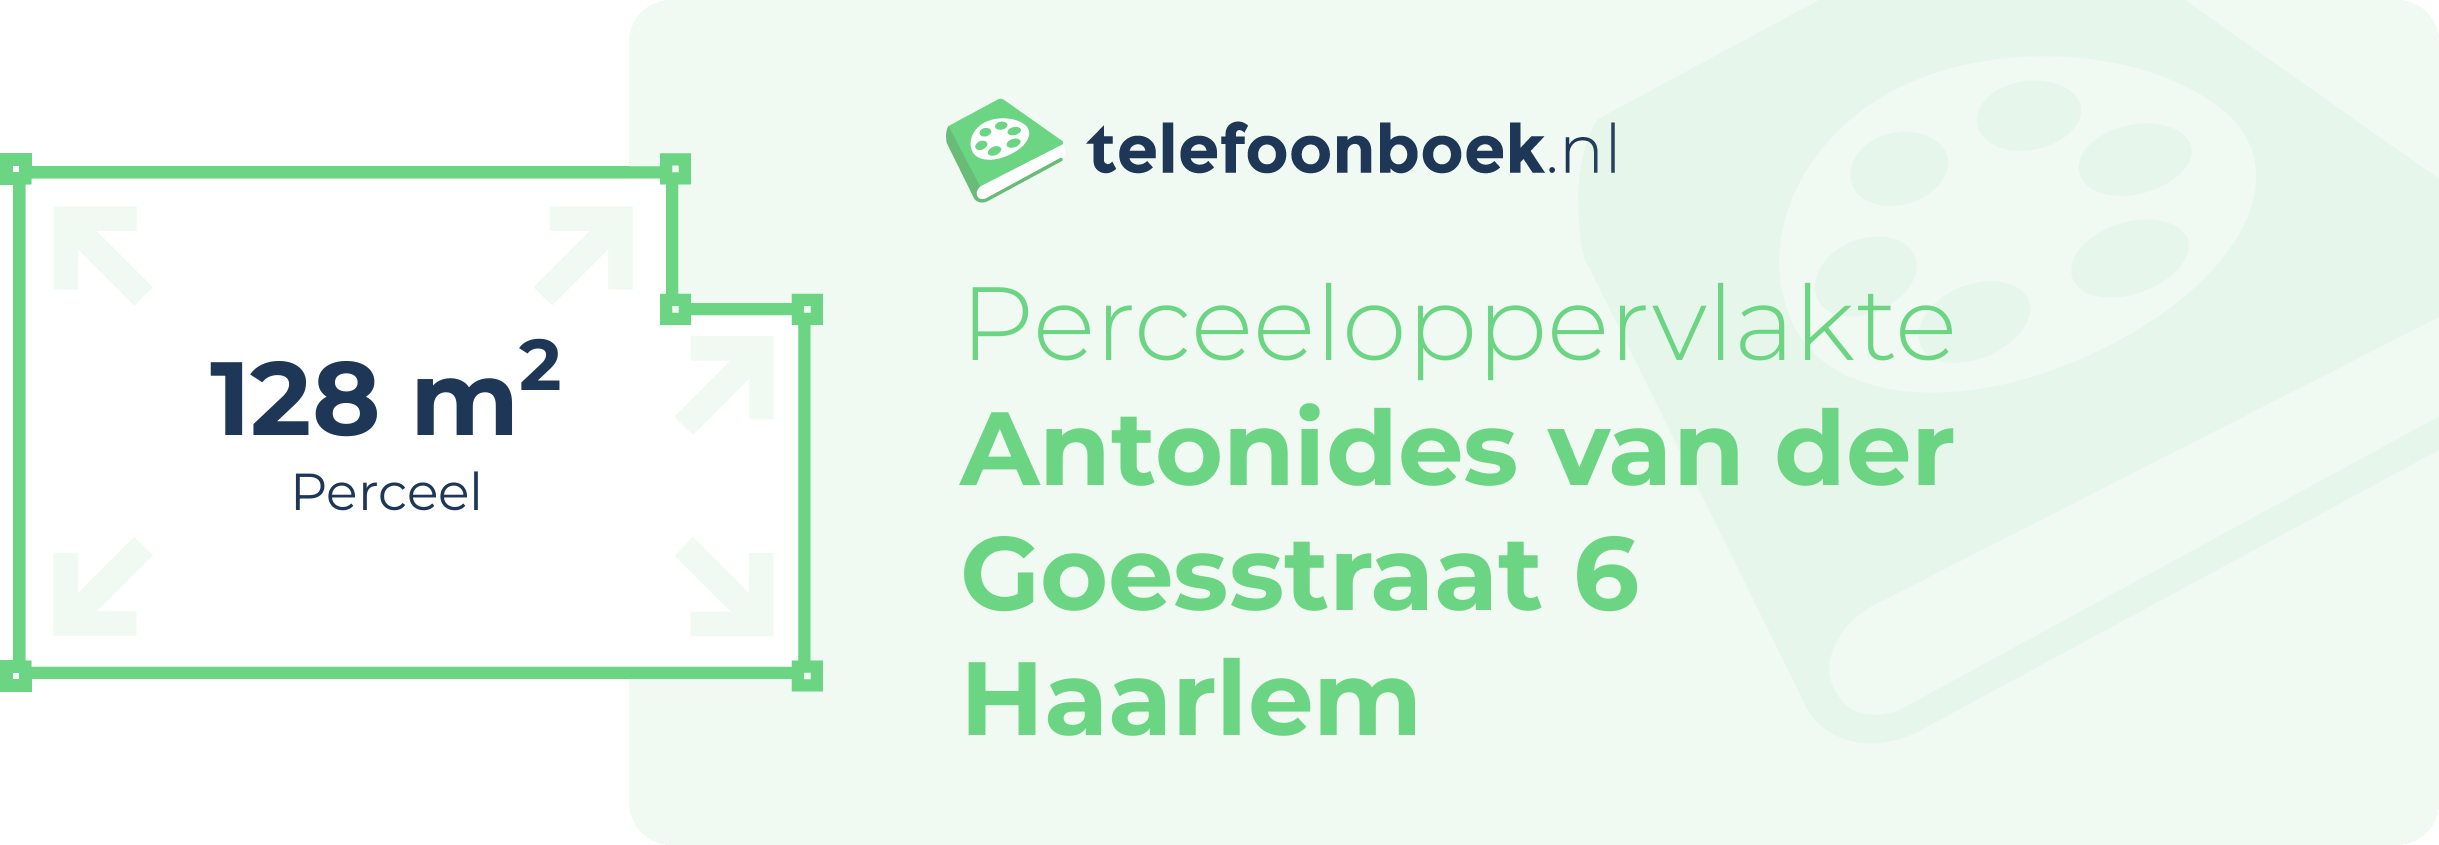 Perceeloppervlakte Antonides Van Der Goesstraat 6 Haarlem